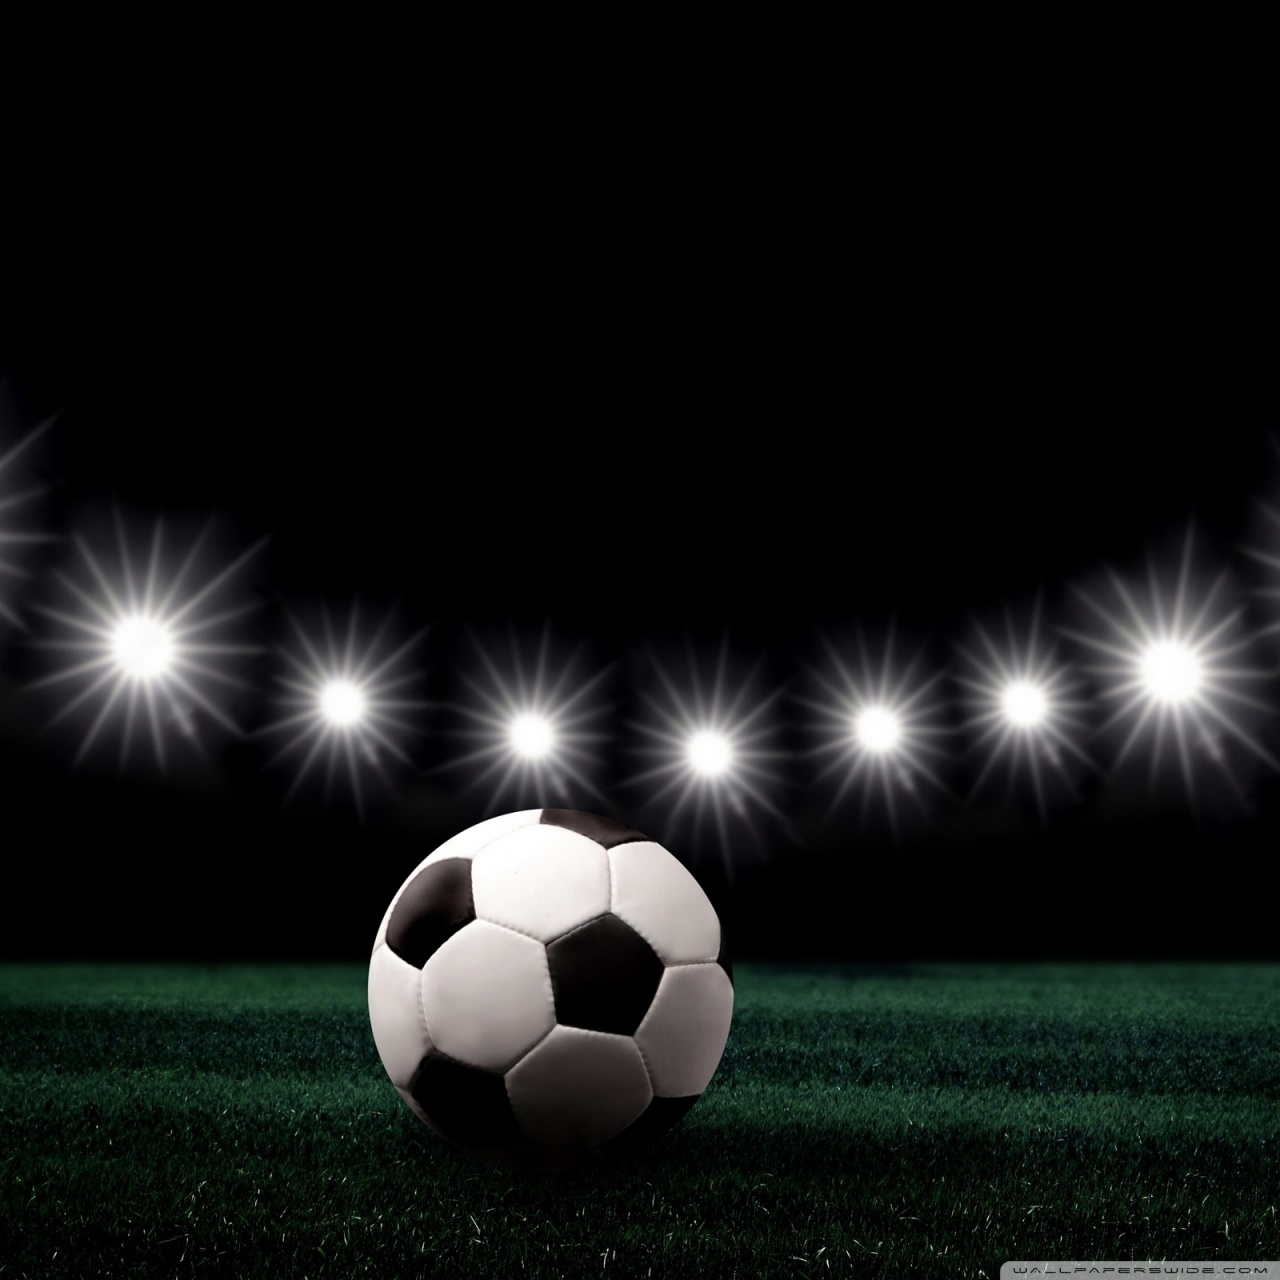 Soccer Stadium At Night 4K HD Desktop Wallpaper For 4K Ultra HD